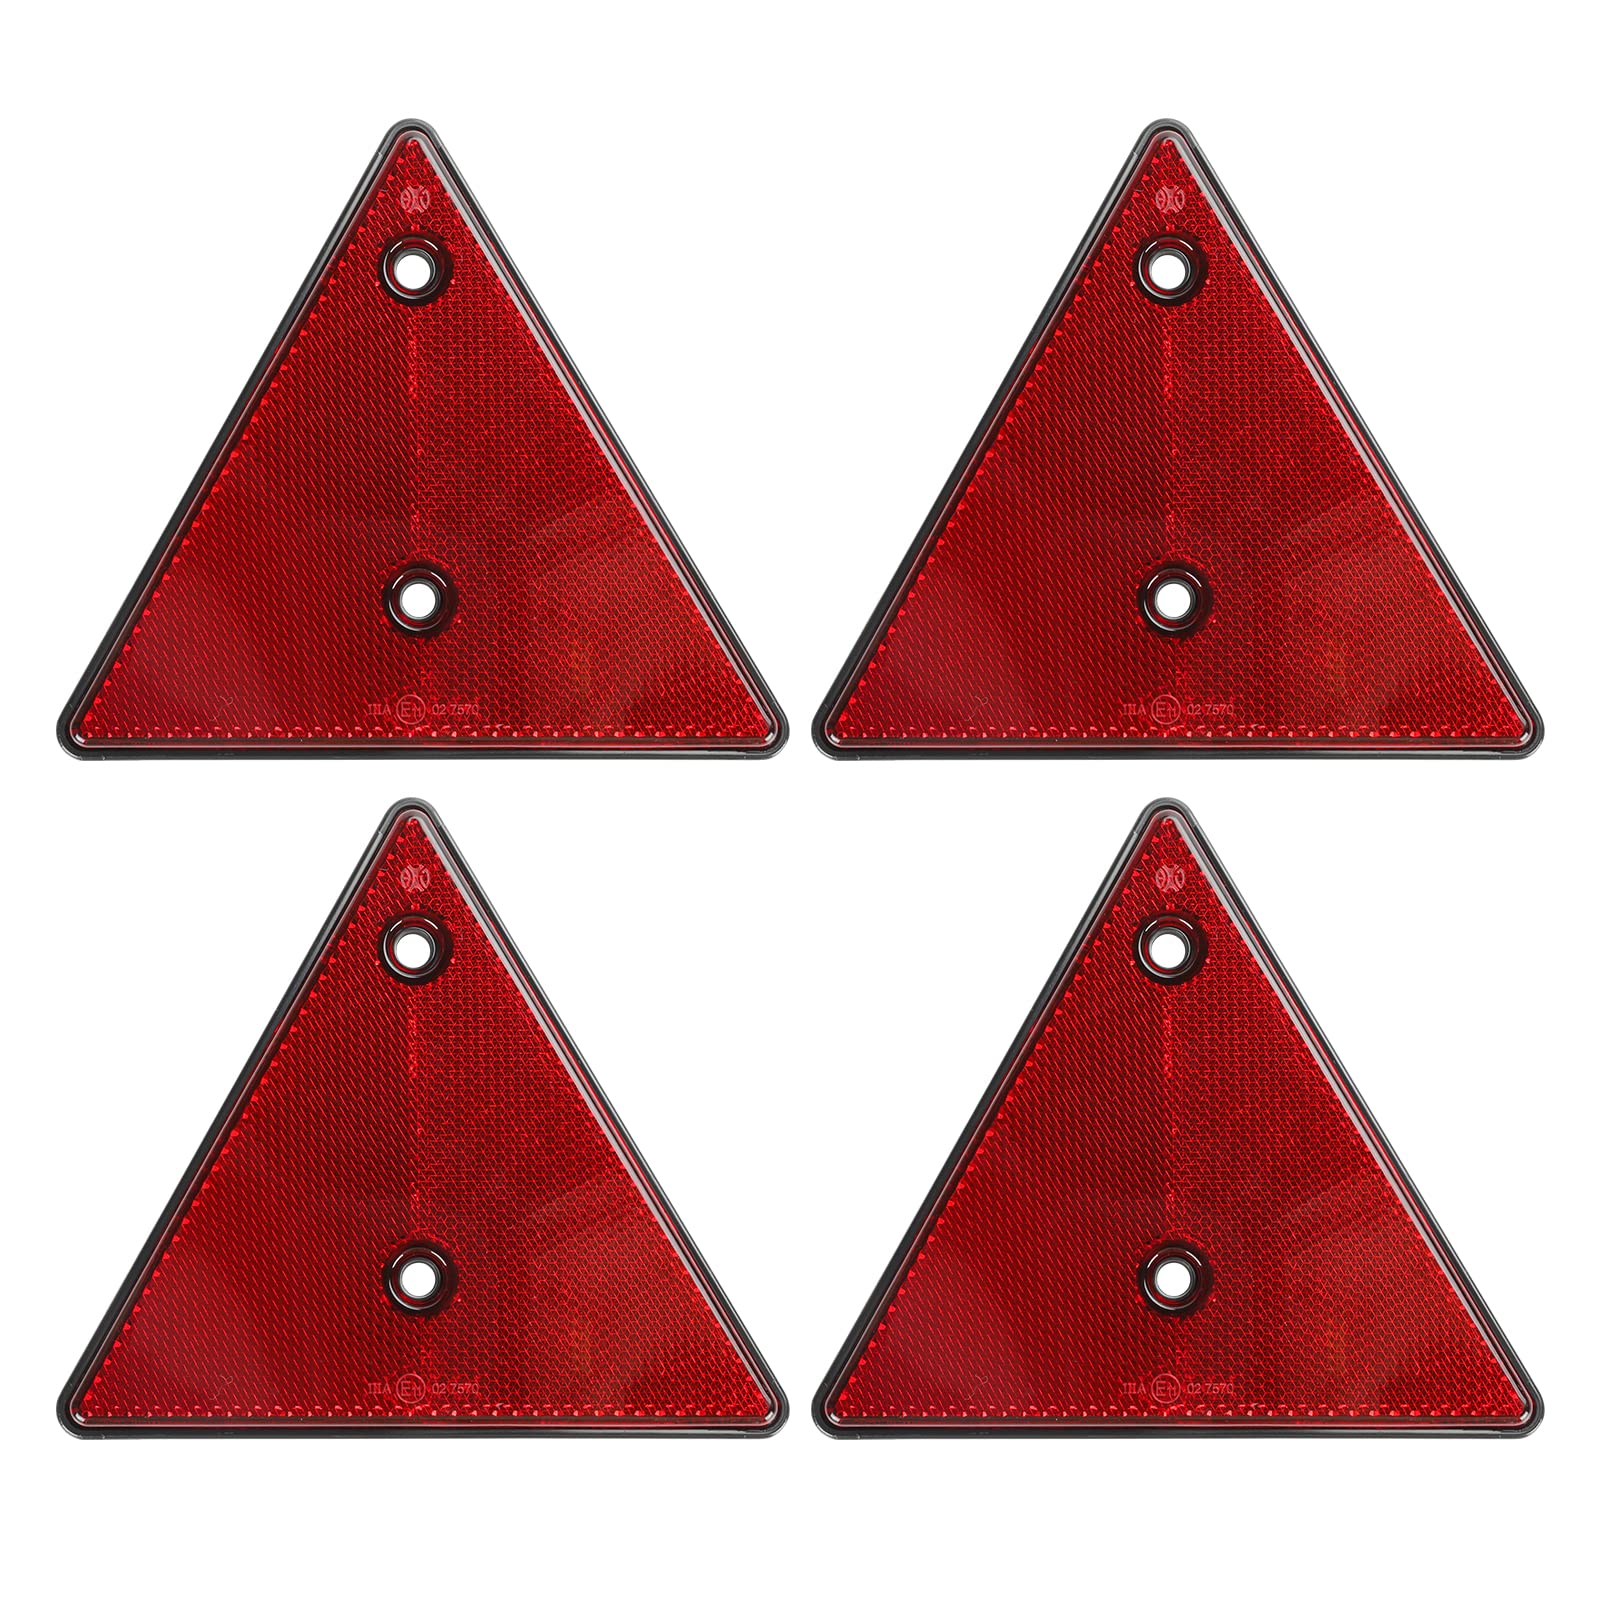 Qiping 4 Pack Anhänger Rückstrahler Dreieck mit E-Prüfzeichen, Rot Dreieckige Reflektor fur PKW, LKW, Traktor, Wohnmobil, Pferdeanhänger von Qiping